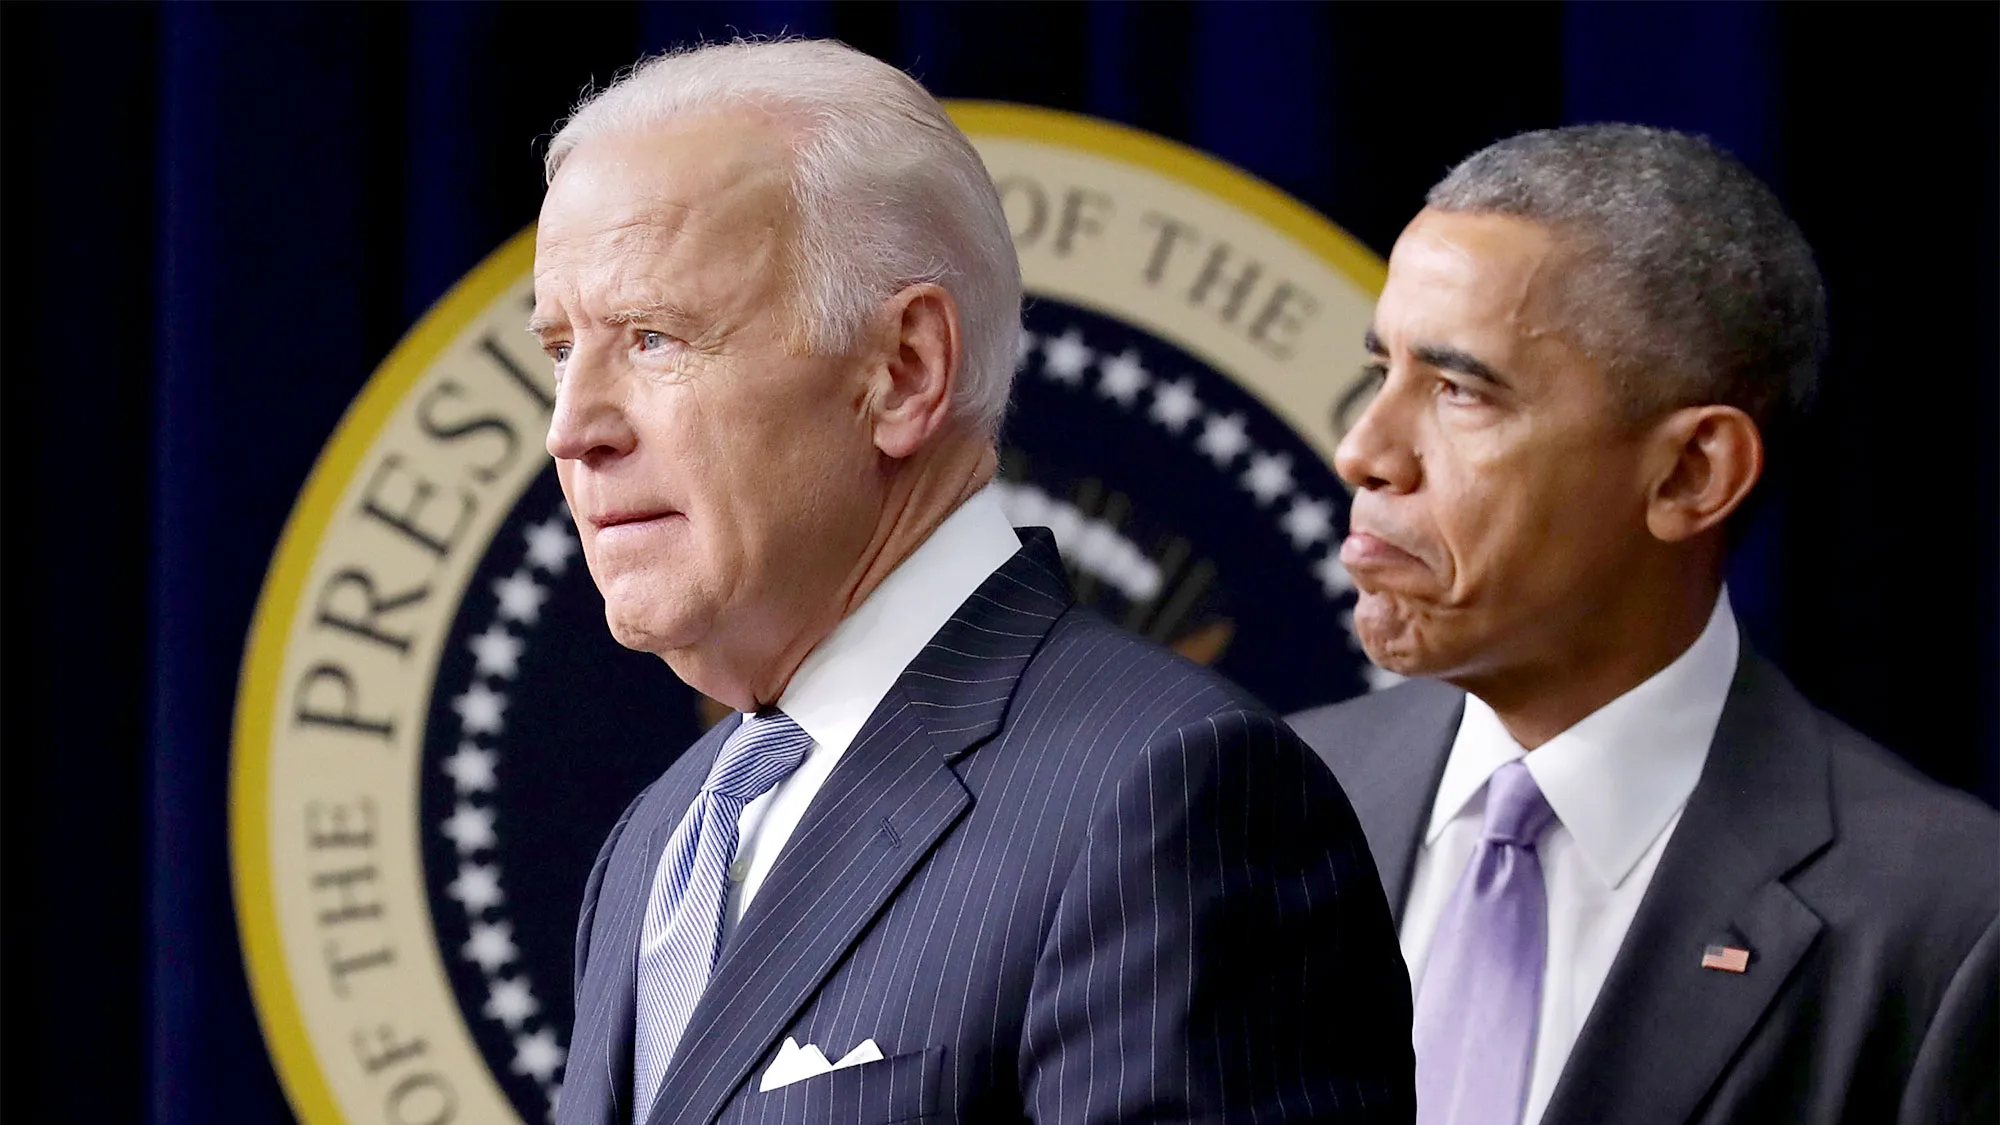 Raportohet se Obama dhe Pelosi kanë kërkuar që Biden të rishqyrtojë kandidimin